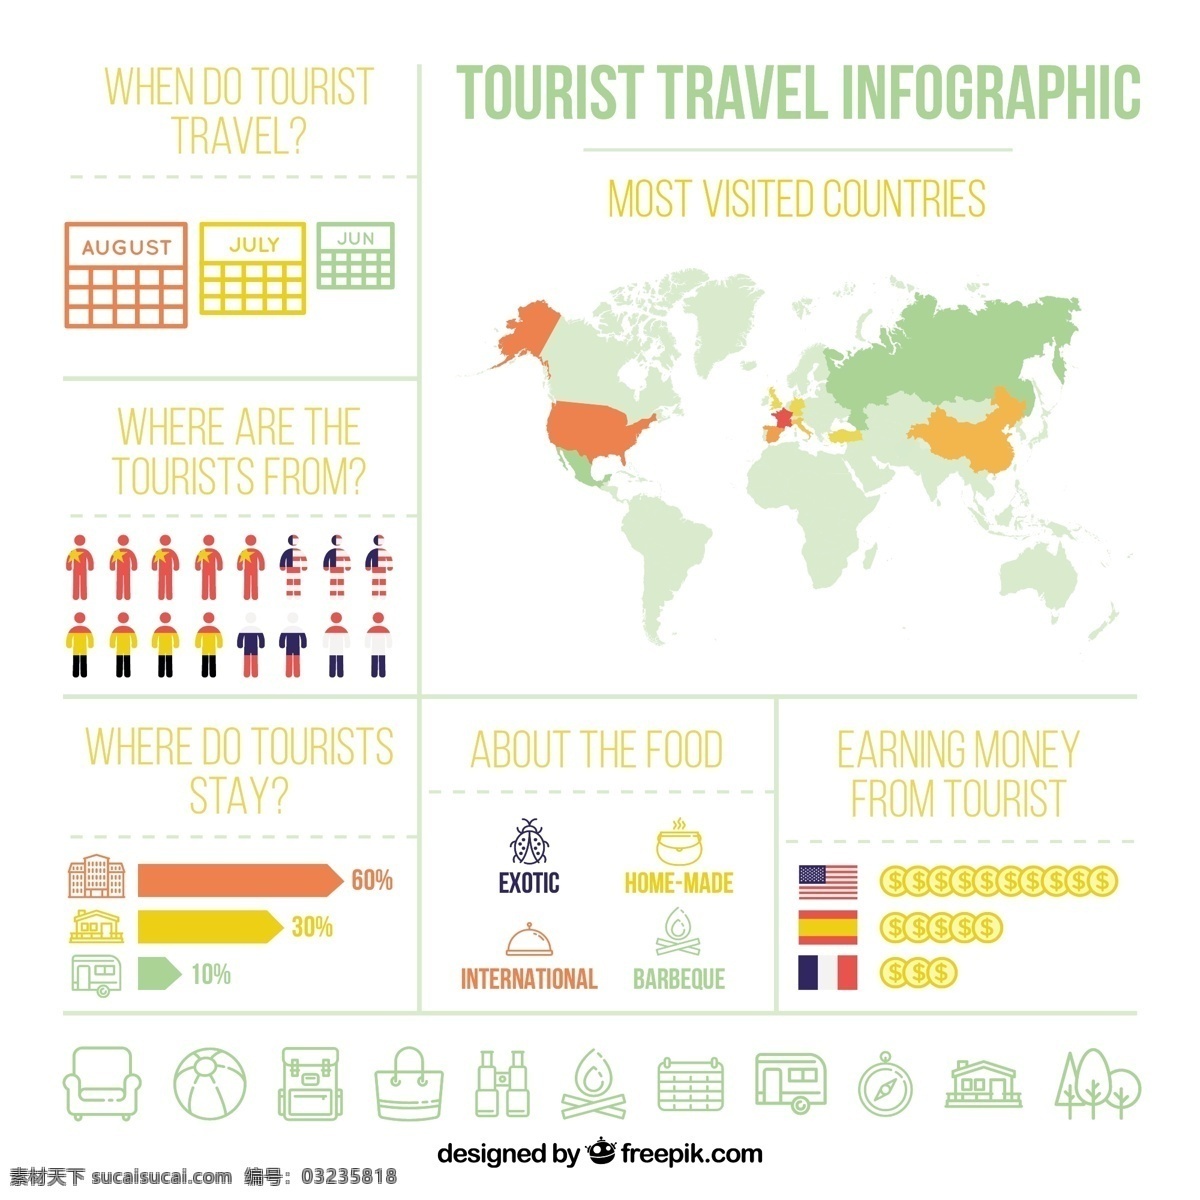 平面设计 旅游 信息 图表 旅行 计算机 地图 世界 世界地图 图形 平图 过程 数据 图表元素 元素 度假 信息图形